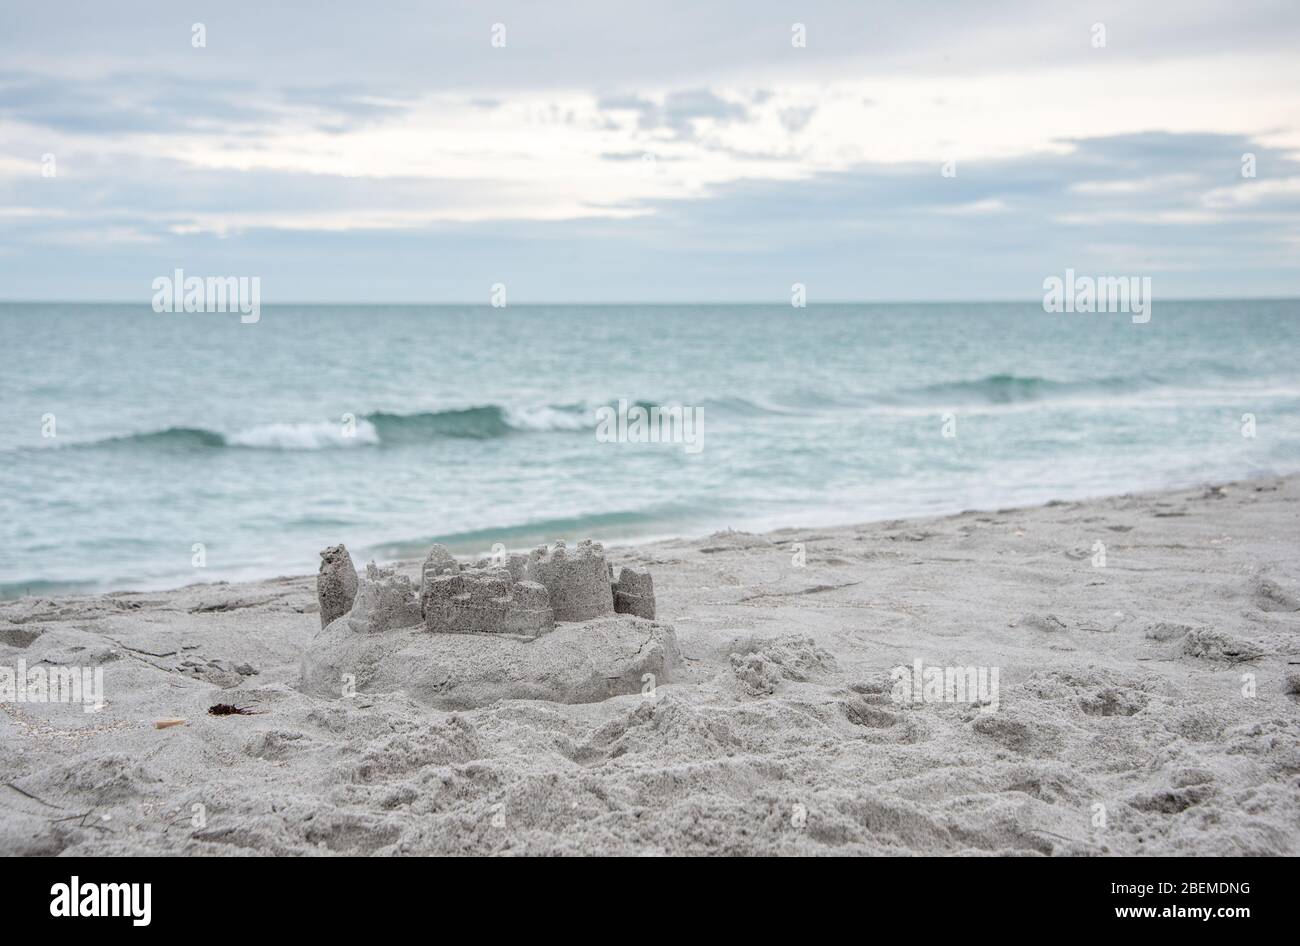 Un château de sable sur la plage avec des vagues douces, une scène sereine pour des vacances en famille en Floride / vacances dans la nature. Banque D'Images